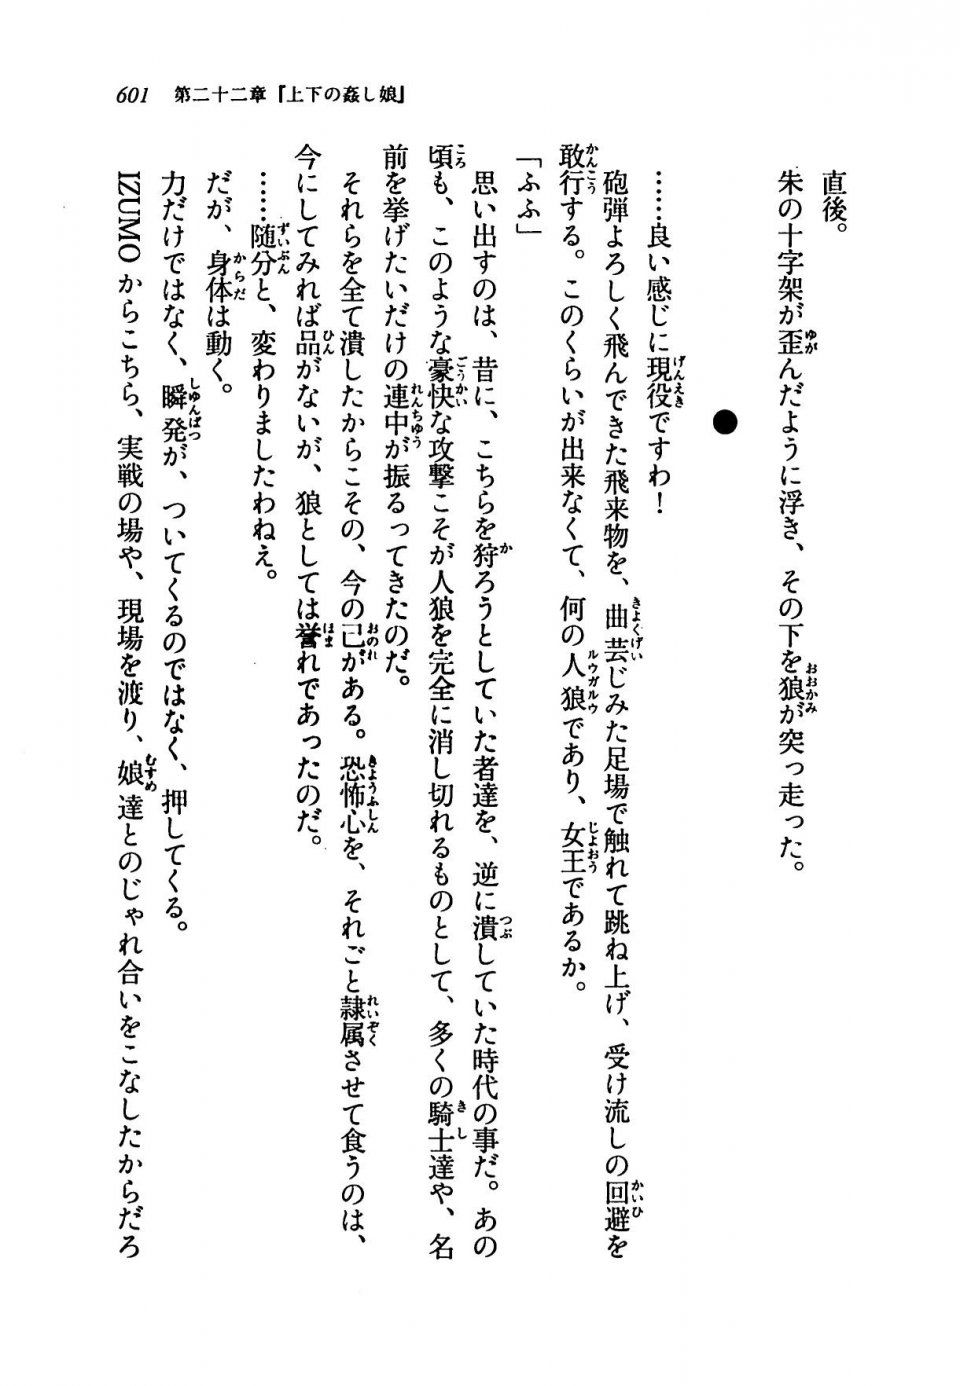 Kyoukai Senjou no Horizon LN Vol 19(8A) - Photo #601